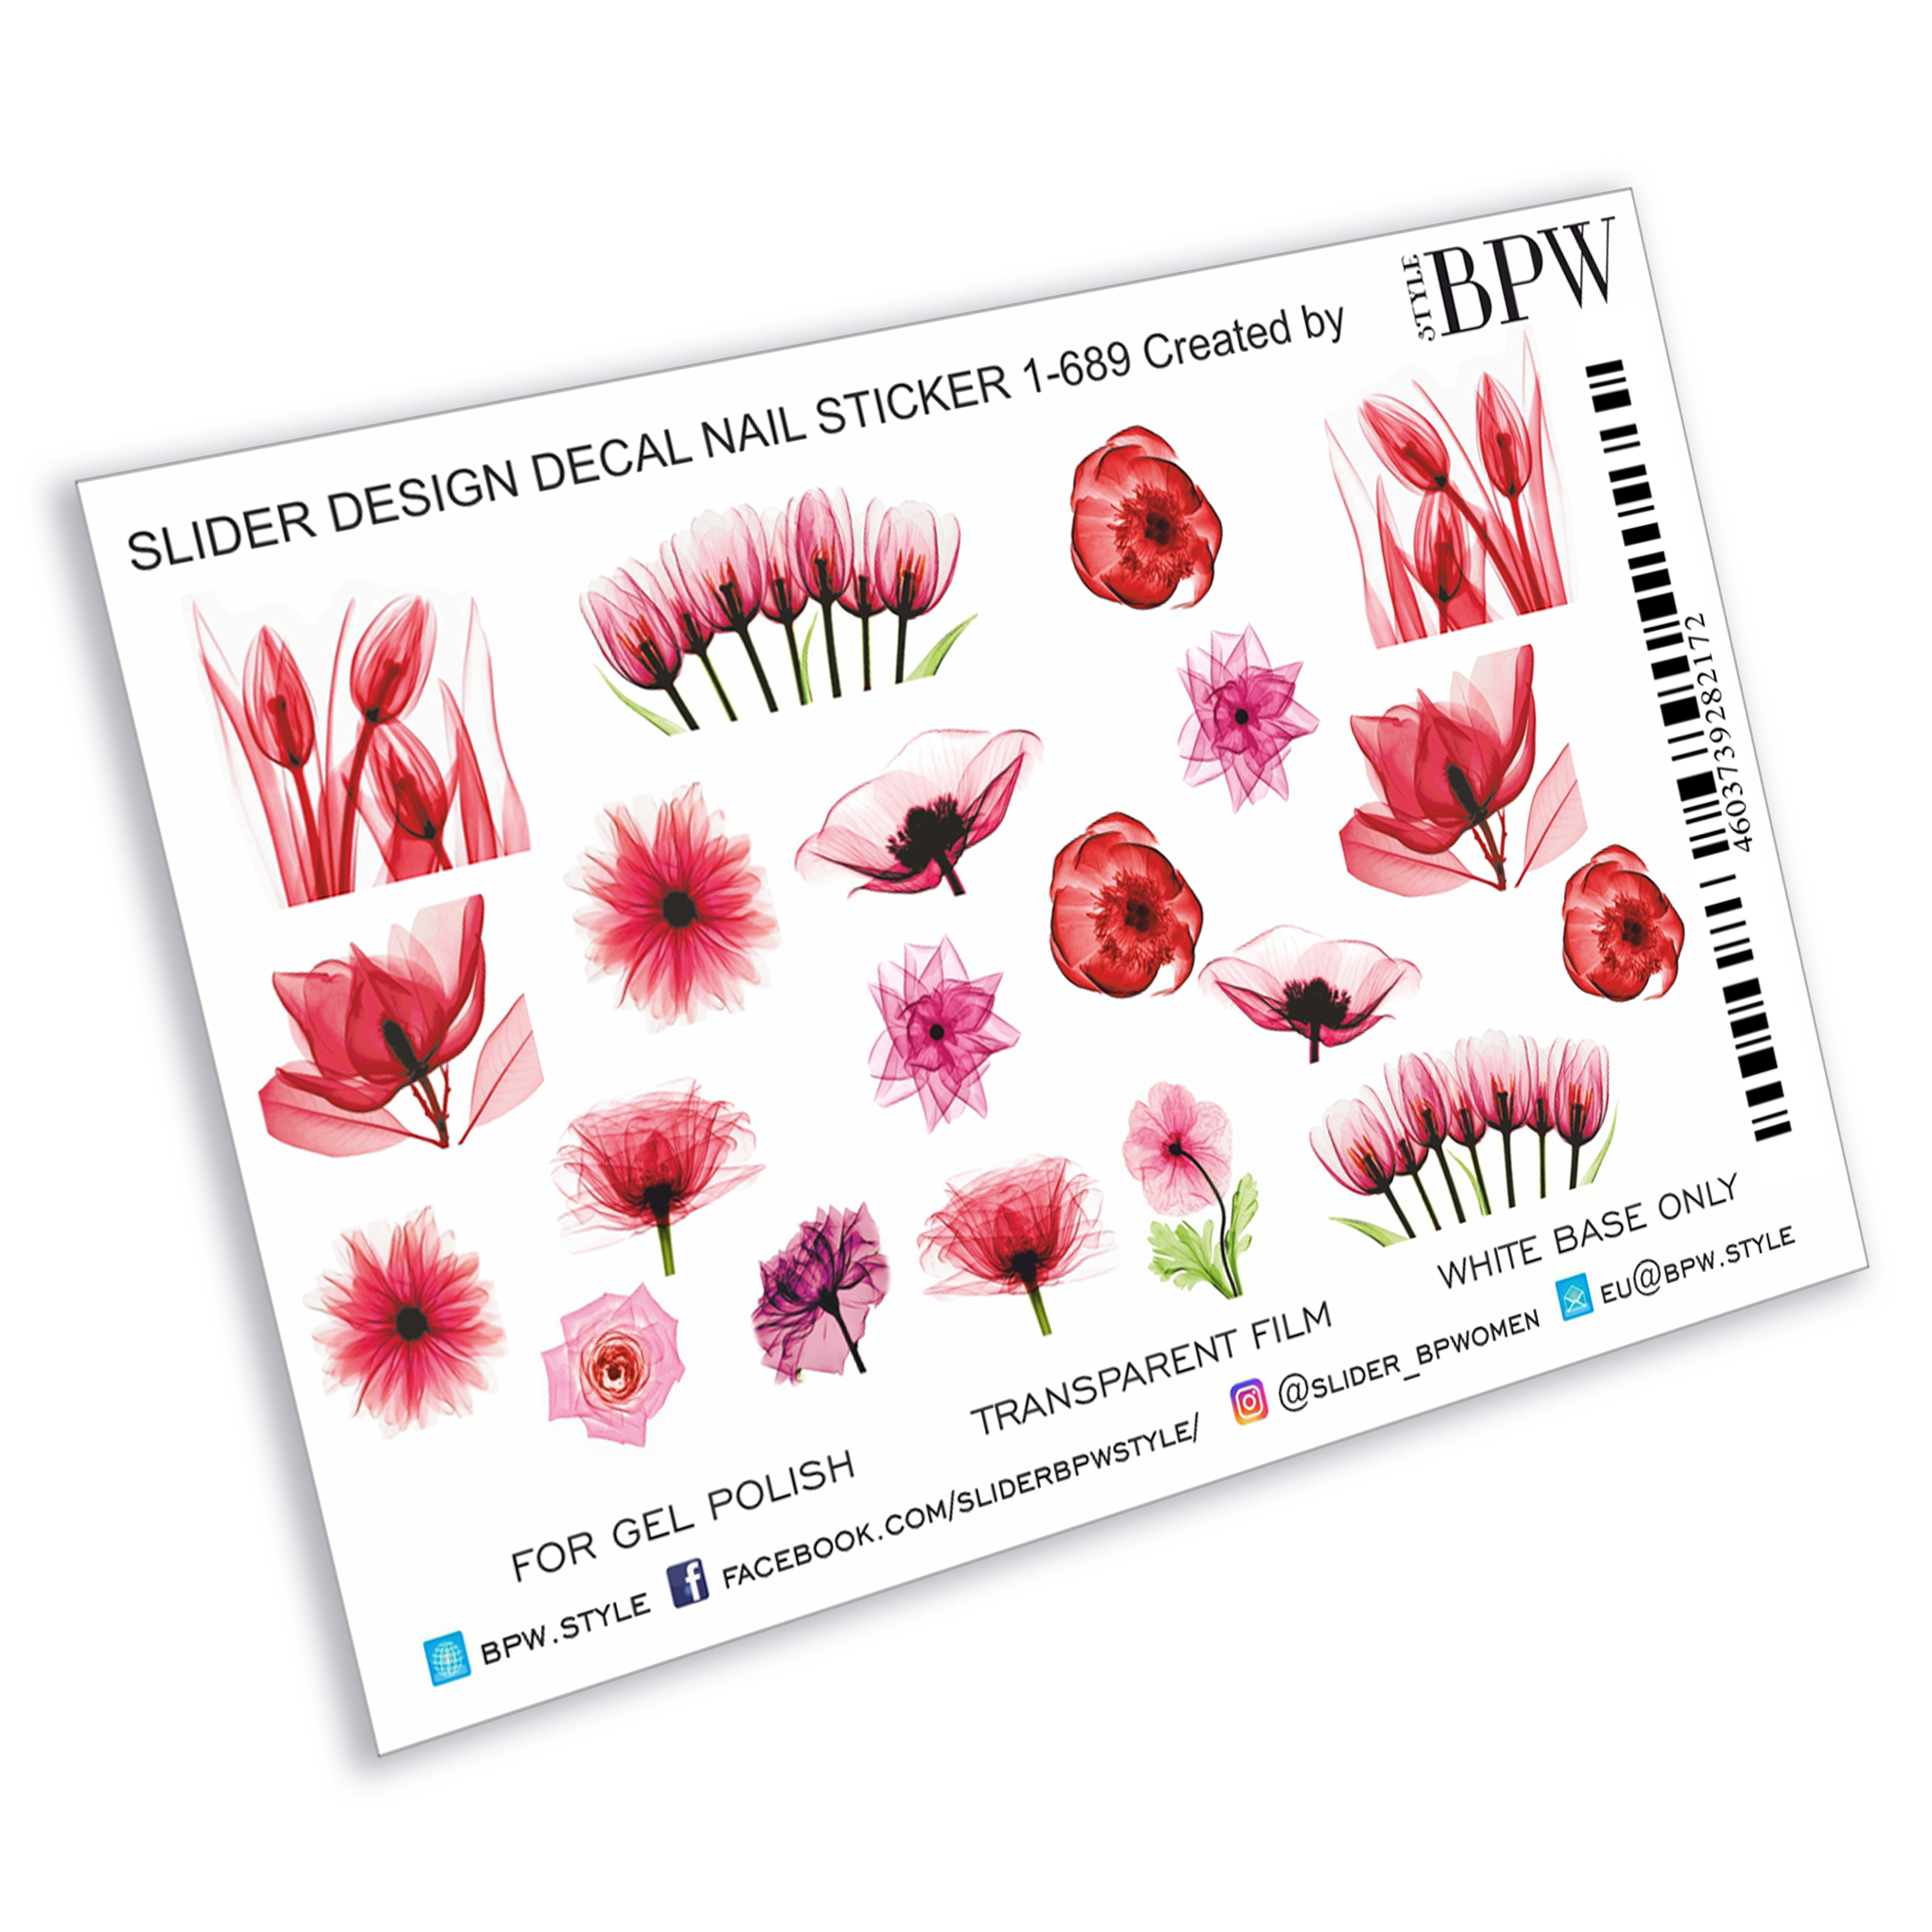 Слайдеры цветы. Дизайн со слайдерами цветы. Слайдер товаров. Цветы в одном стиле разных размеров. Слайдер карточки